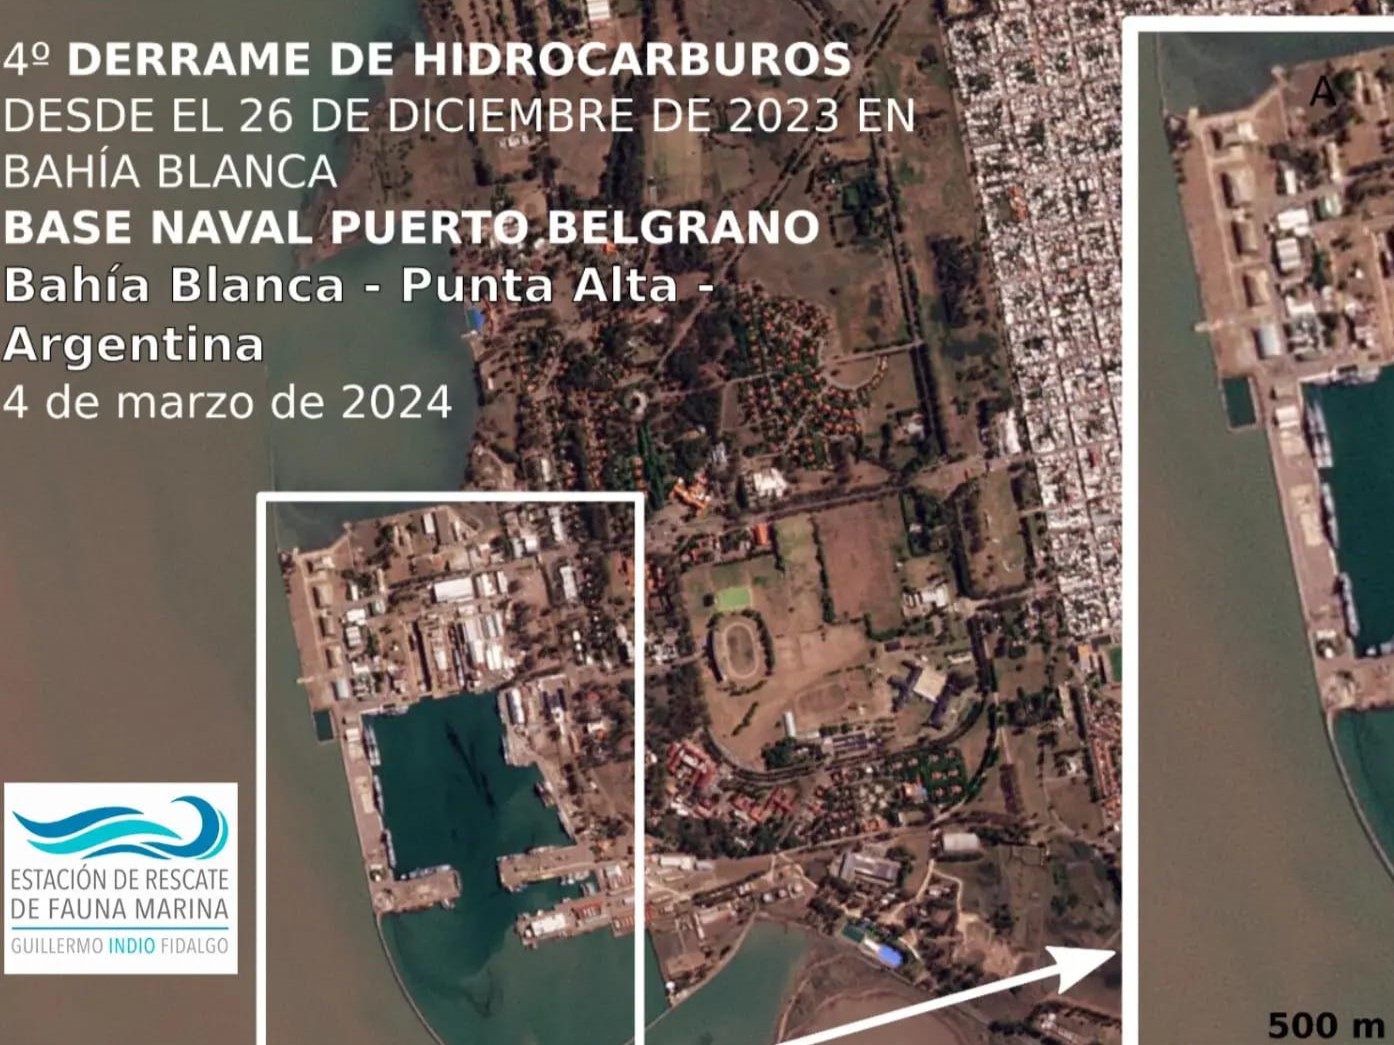 Cuarto derrame de hidrocarburos en Bahía Blanca a poco más de dos meses del primero